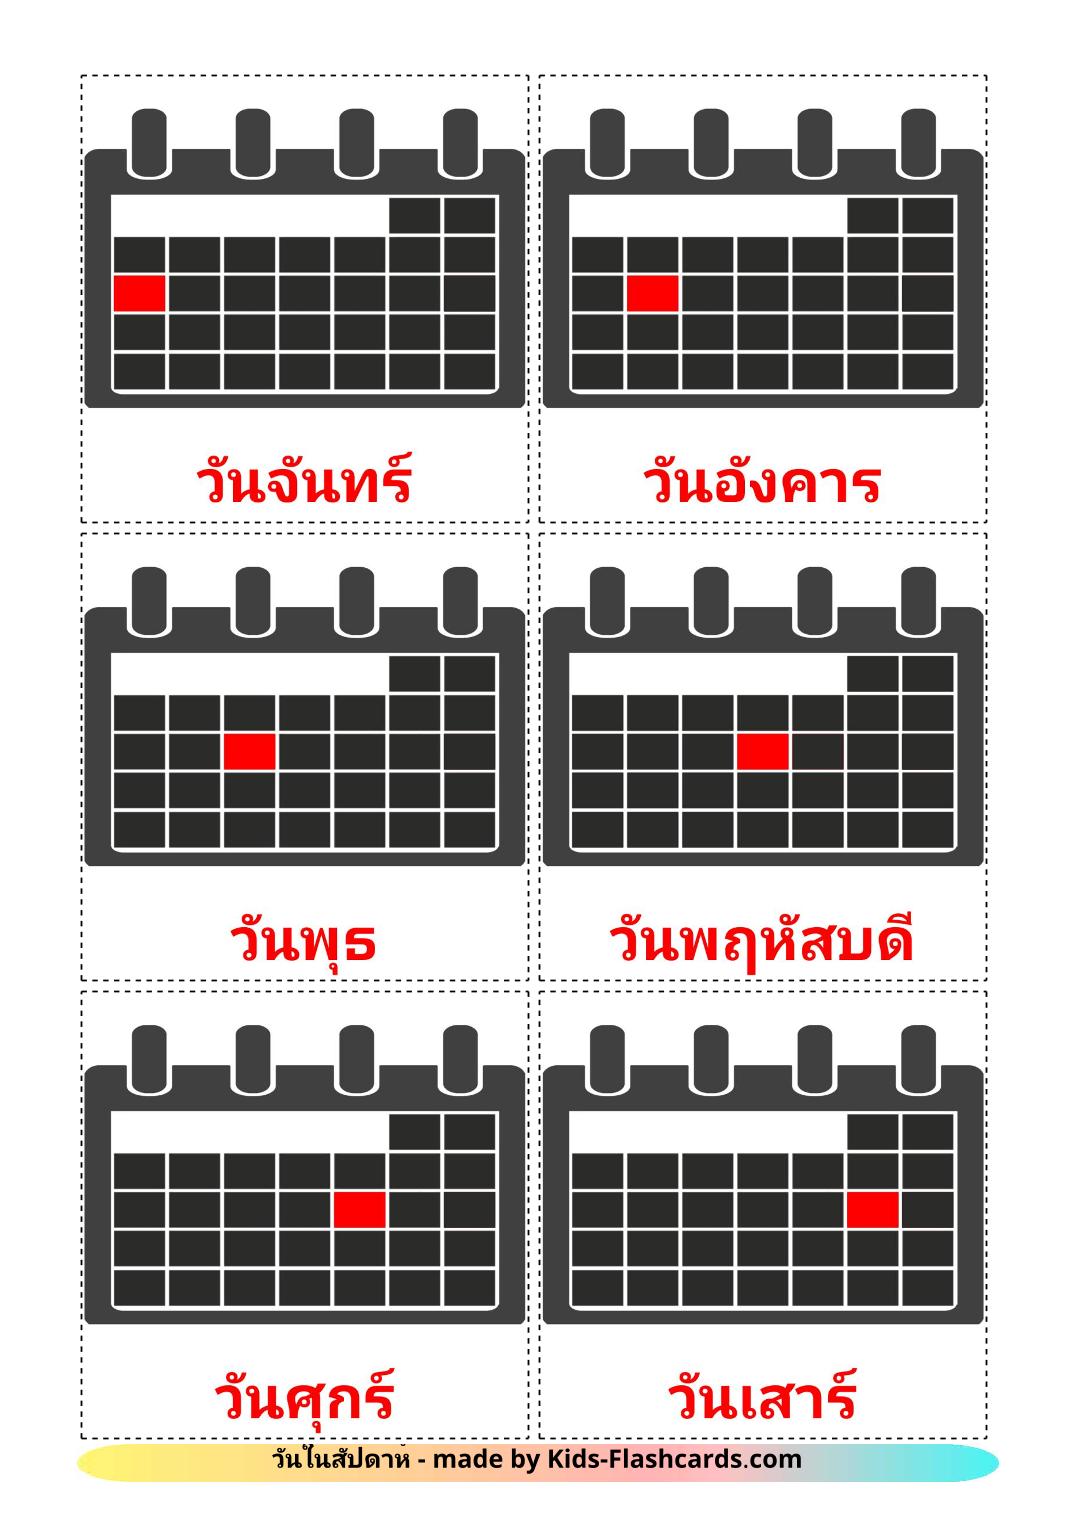 Les Jours de la Semaine - 12 Flashcards thaïlandais imprimables gratuitement